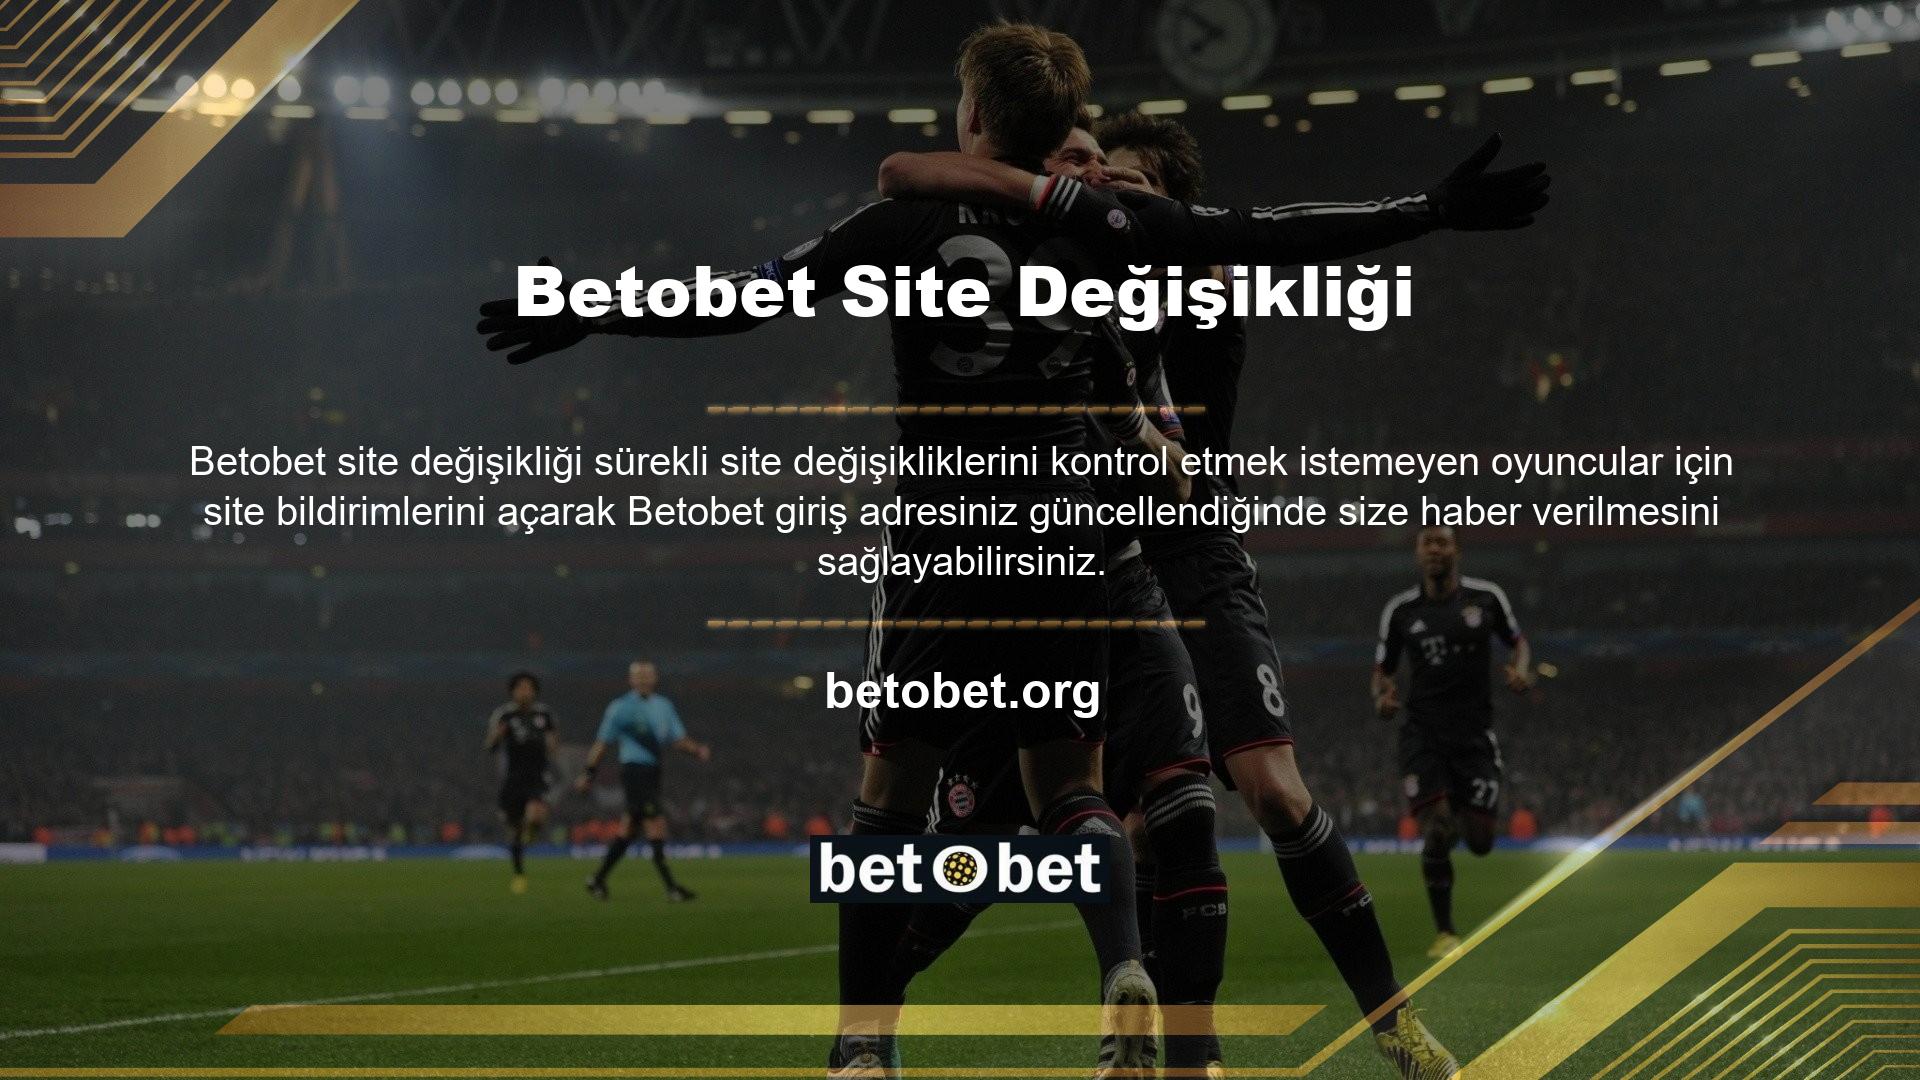 Betobet online oyun sitesine üye olmak veya bu sitede oyun oynamak için bir VPN veya benzeri kullanmanız gerekecek